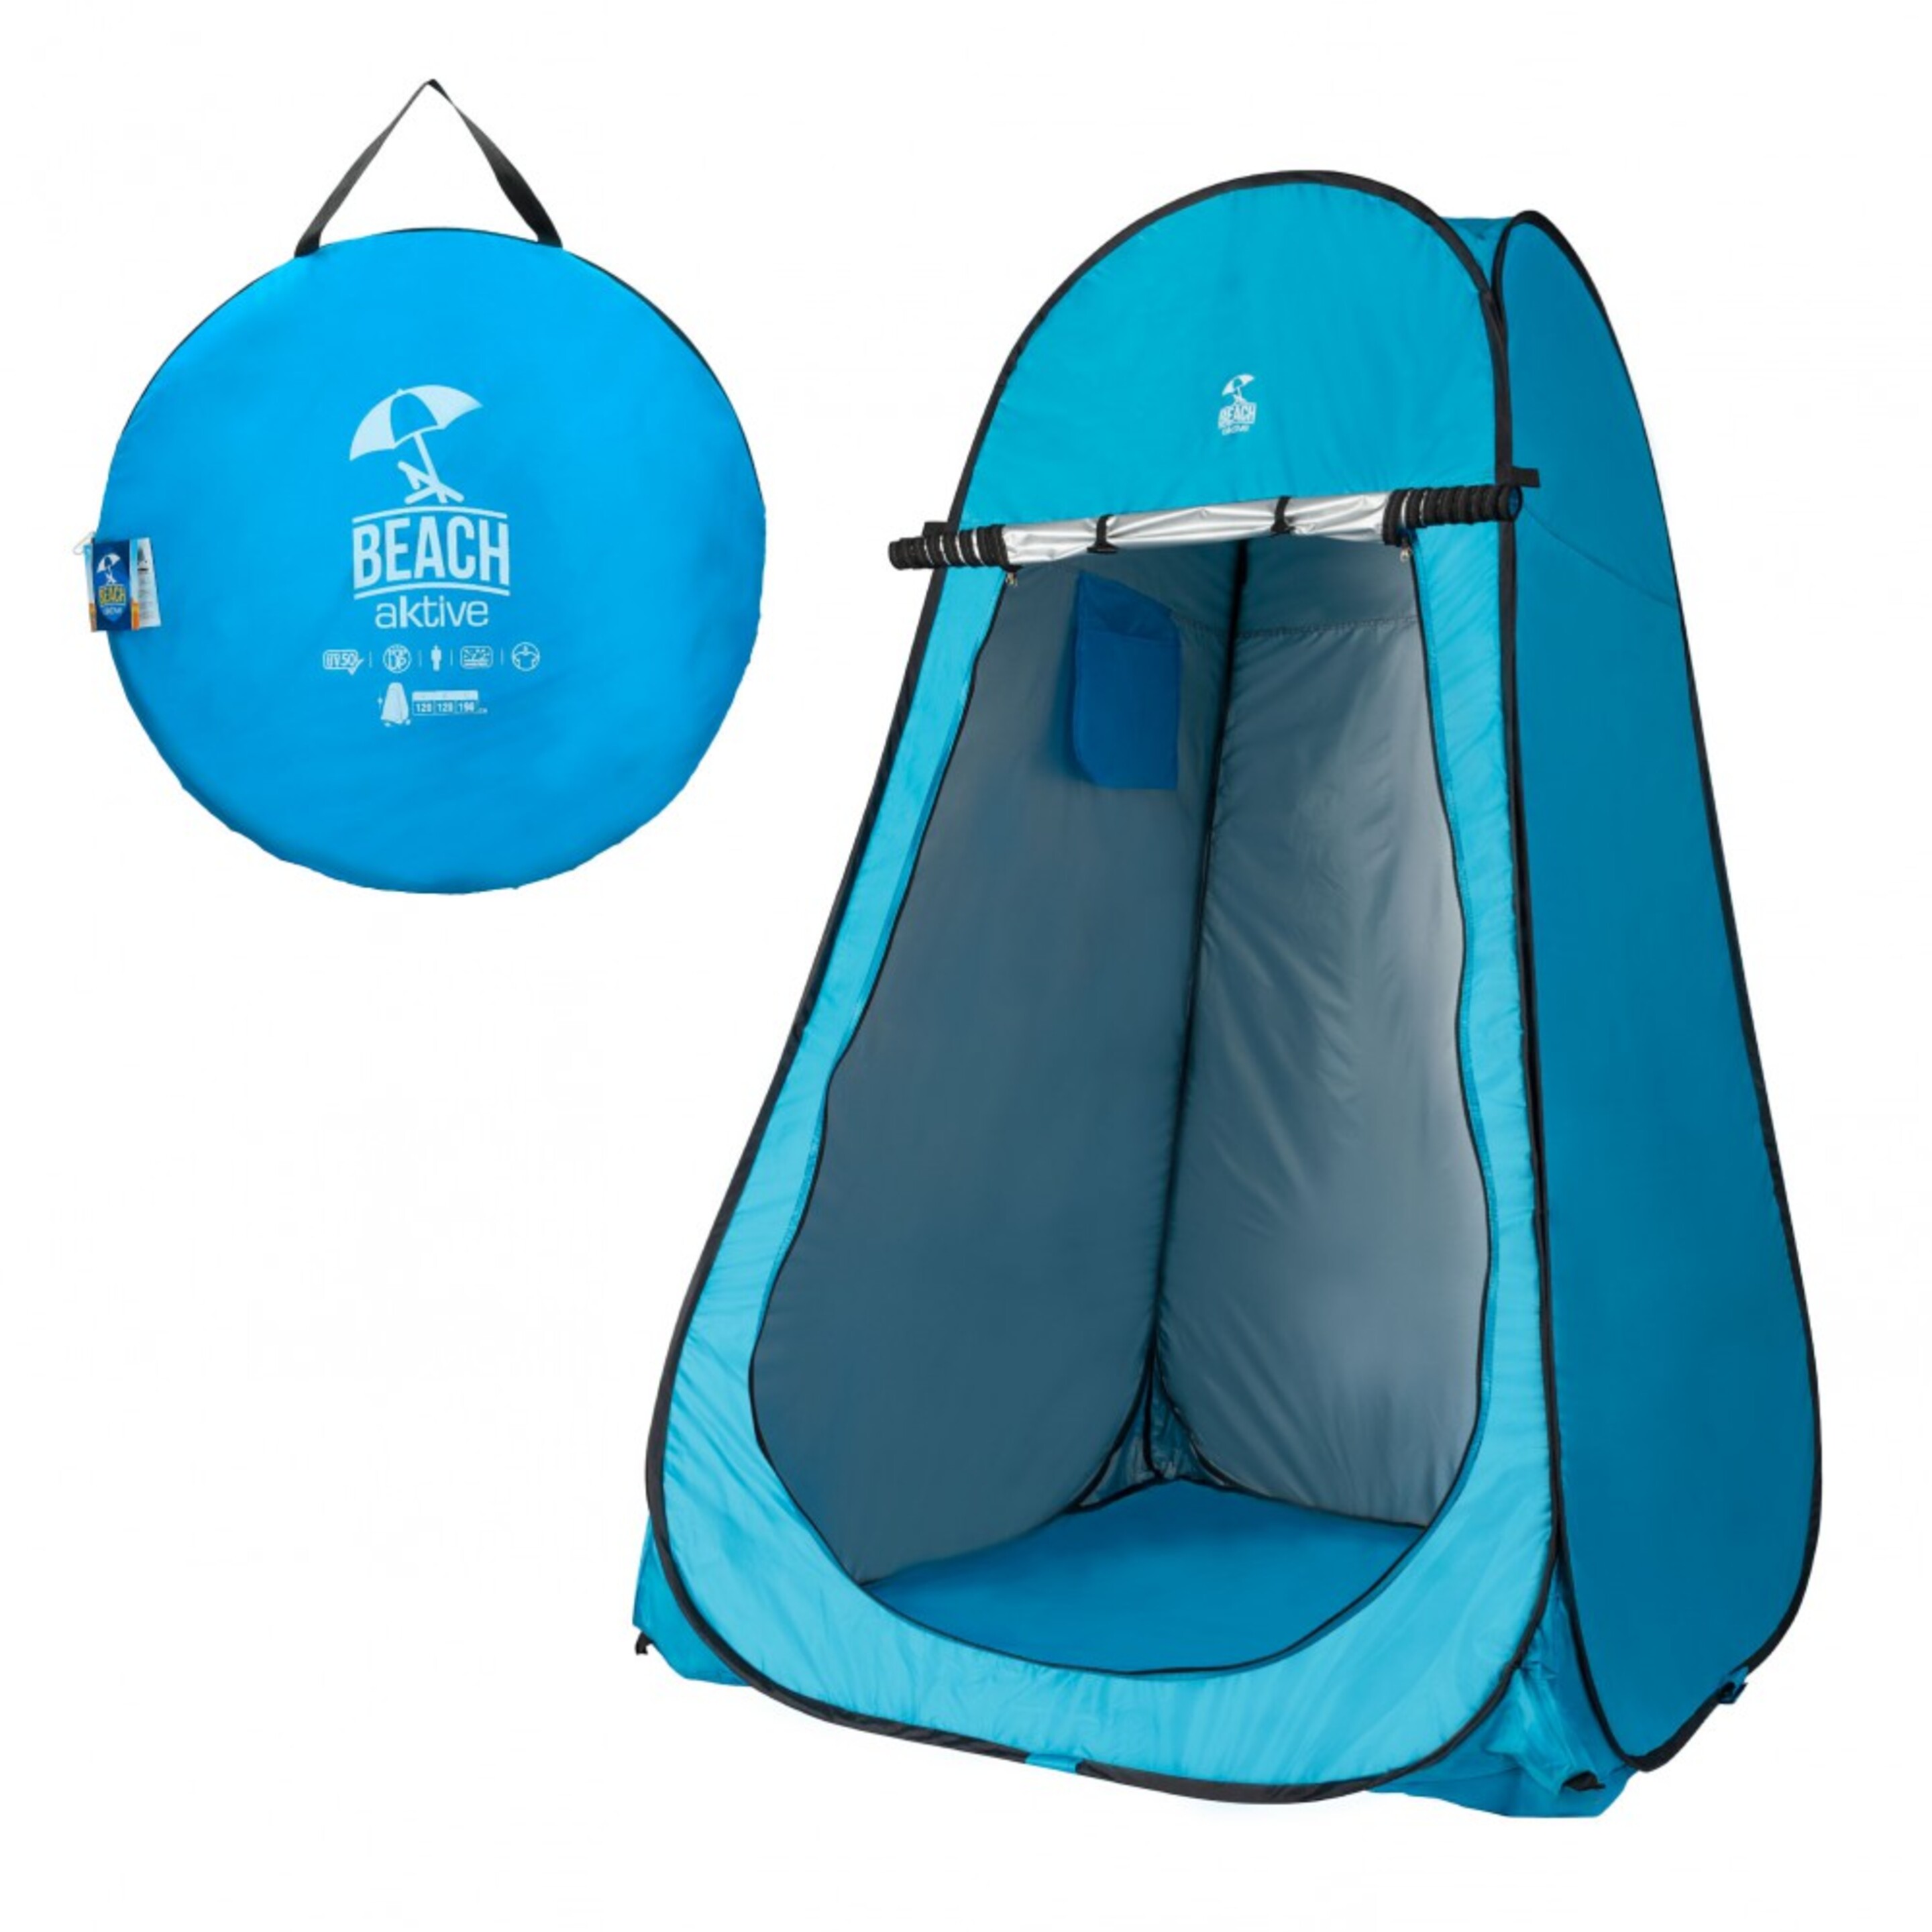 Tienda Campaña Cambiador Para Camping Con Suelo Aktive 120x120x190 Cm Azul - Azul  MKP